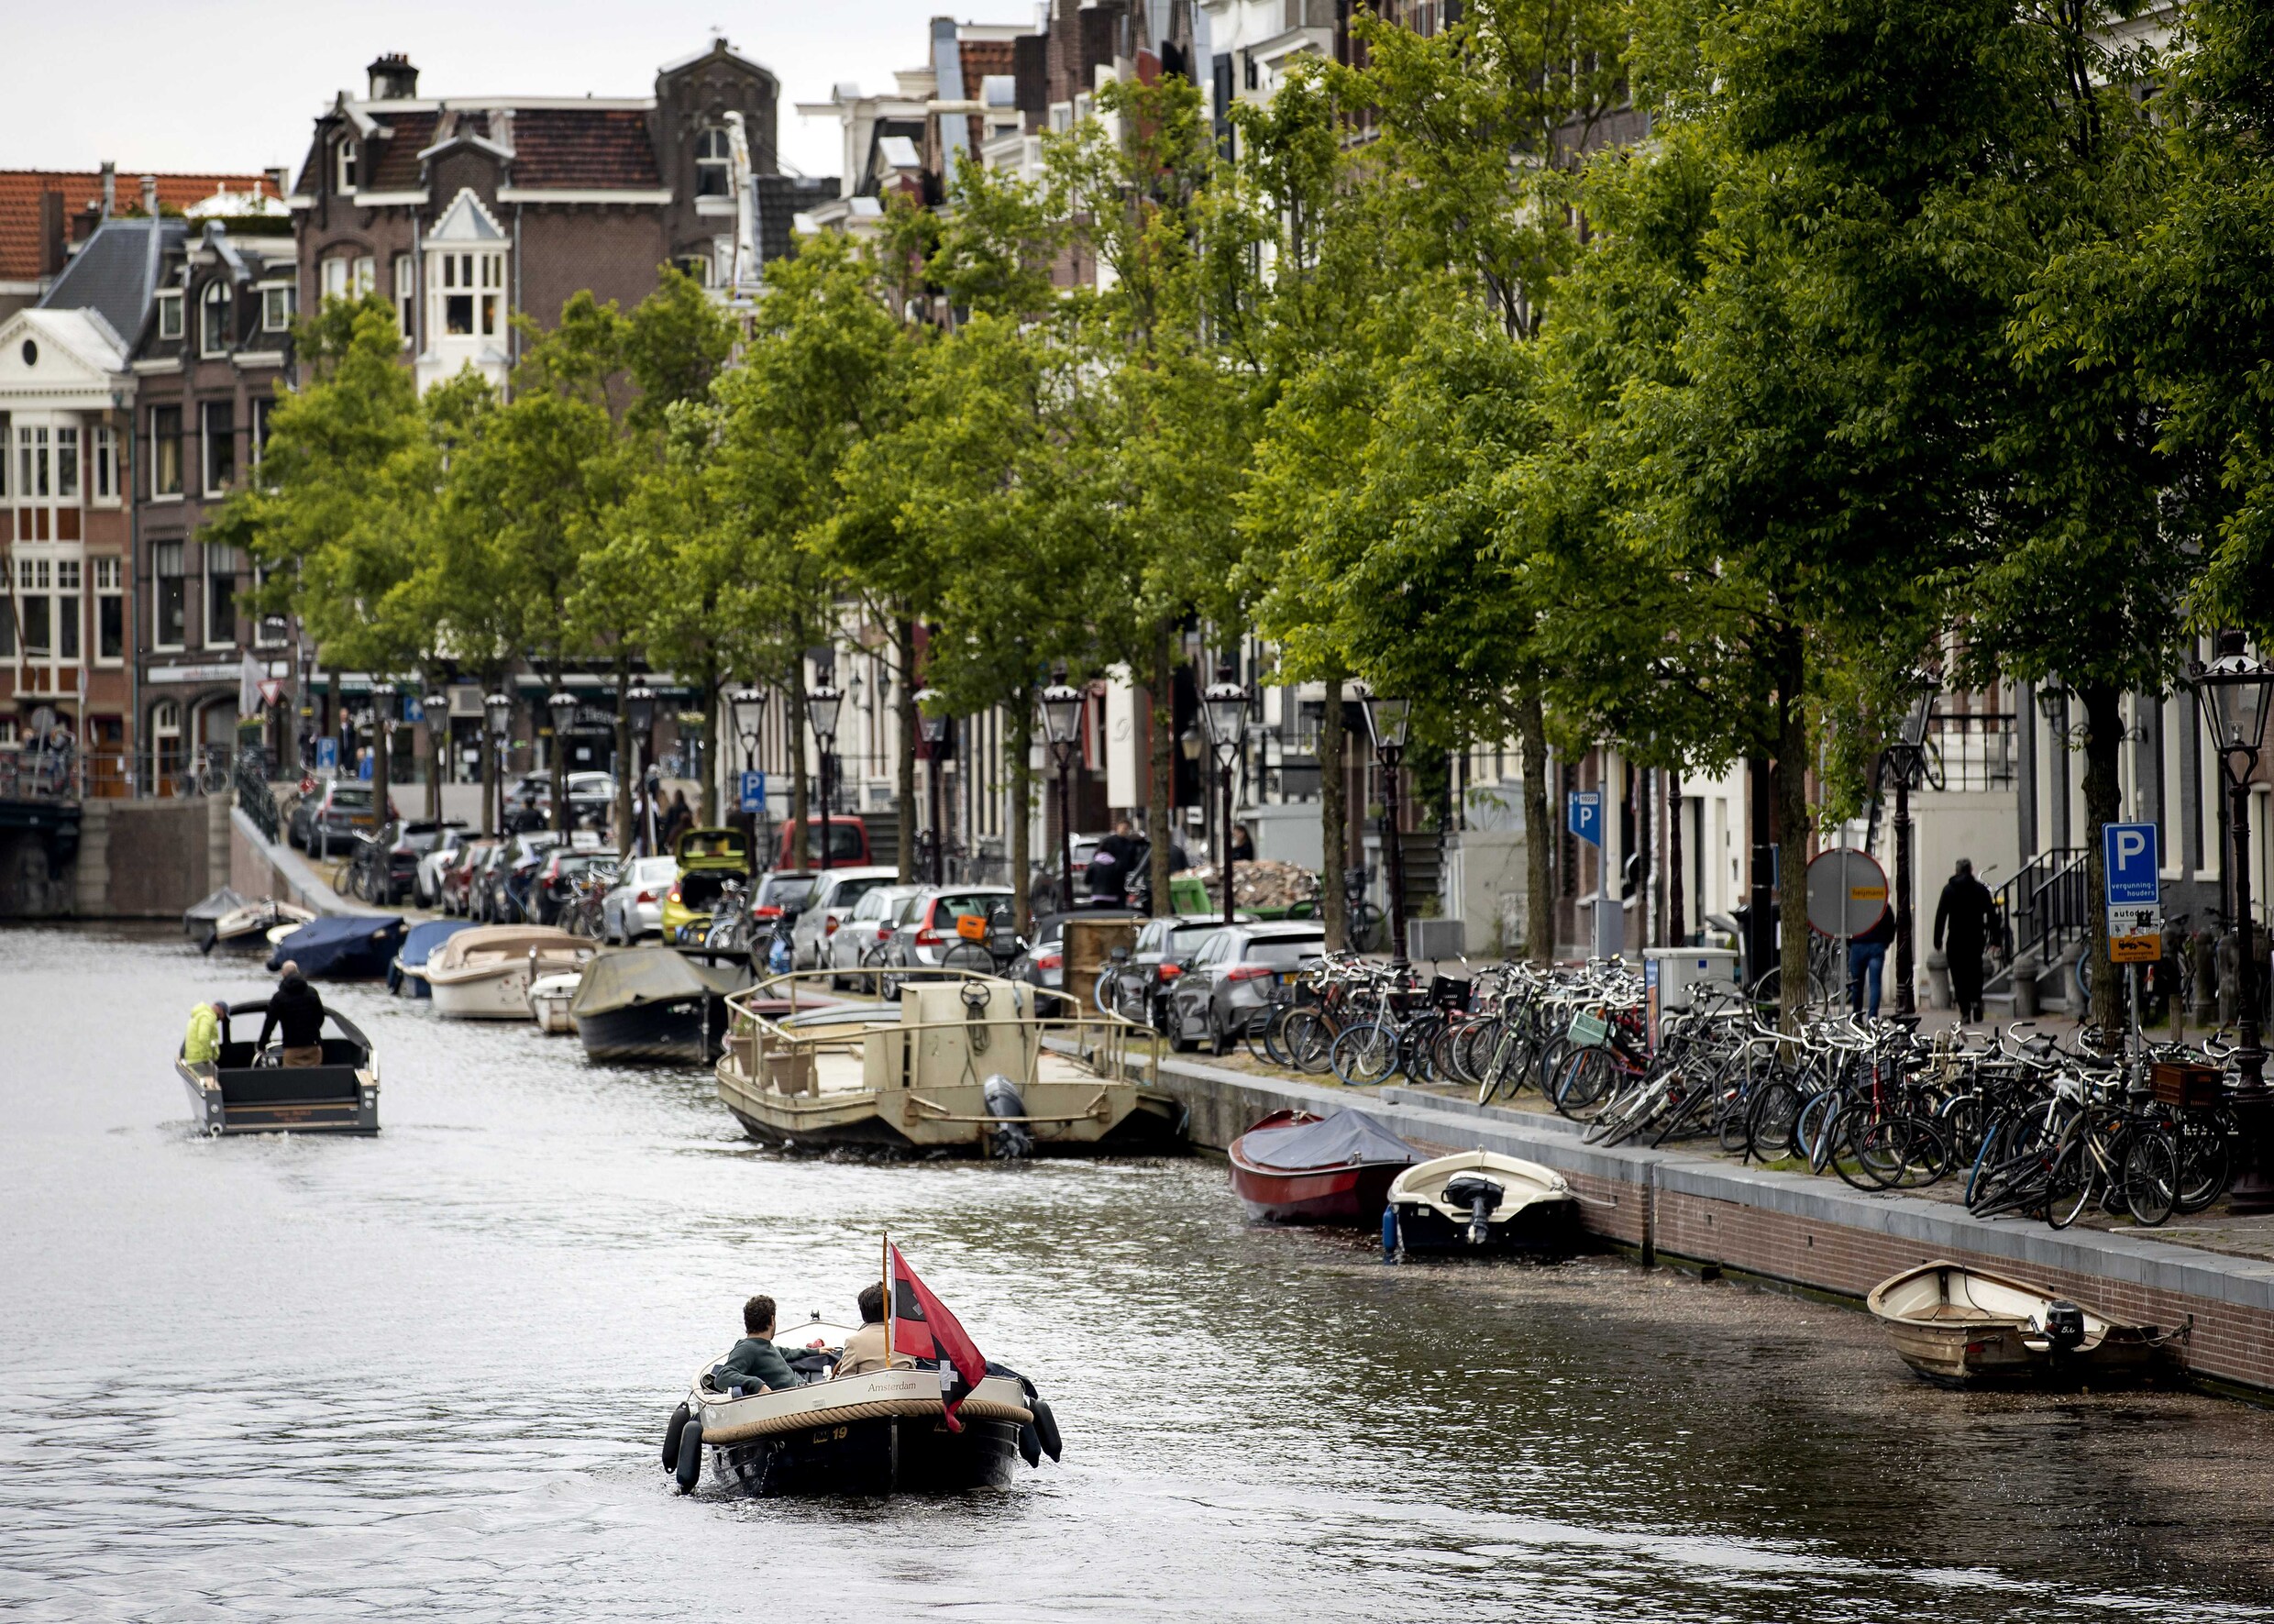 Vakantieverhuur in delen Amsterdam vanaf 1 juli verboden